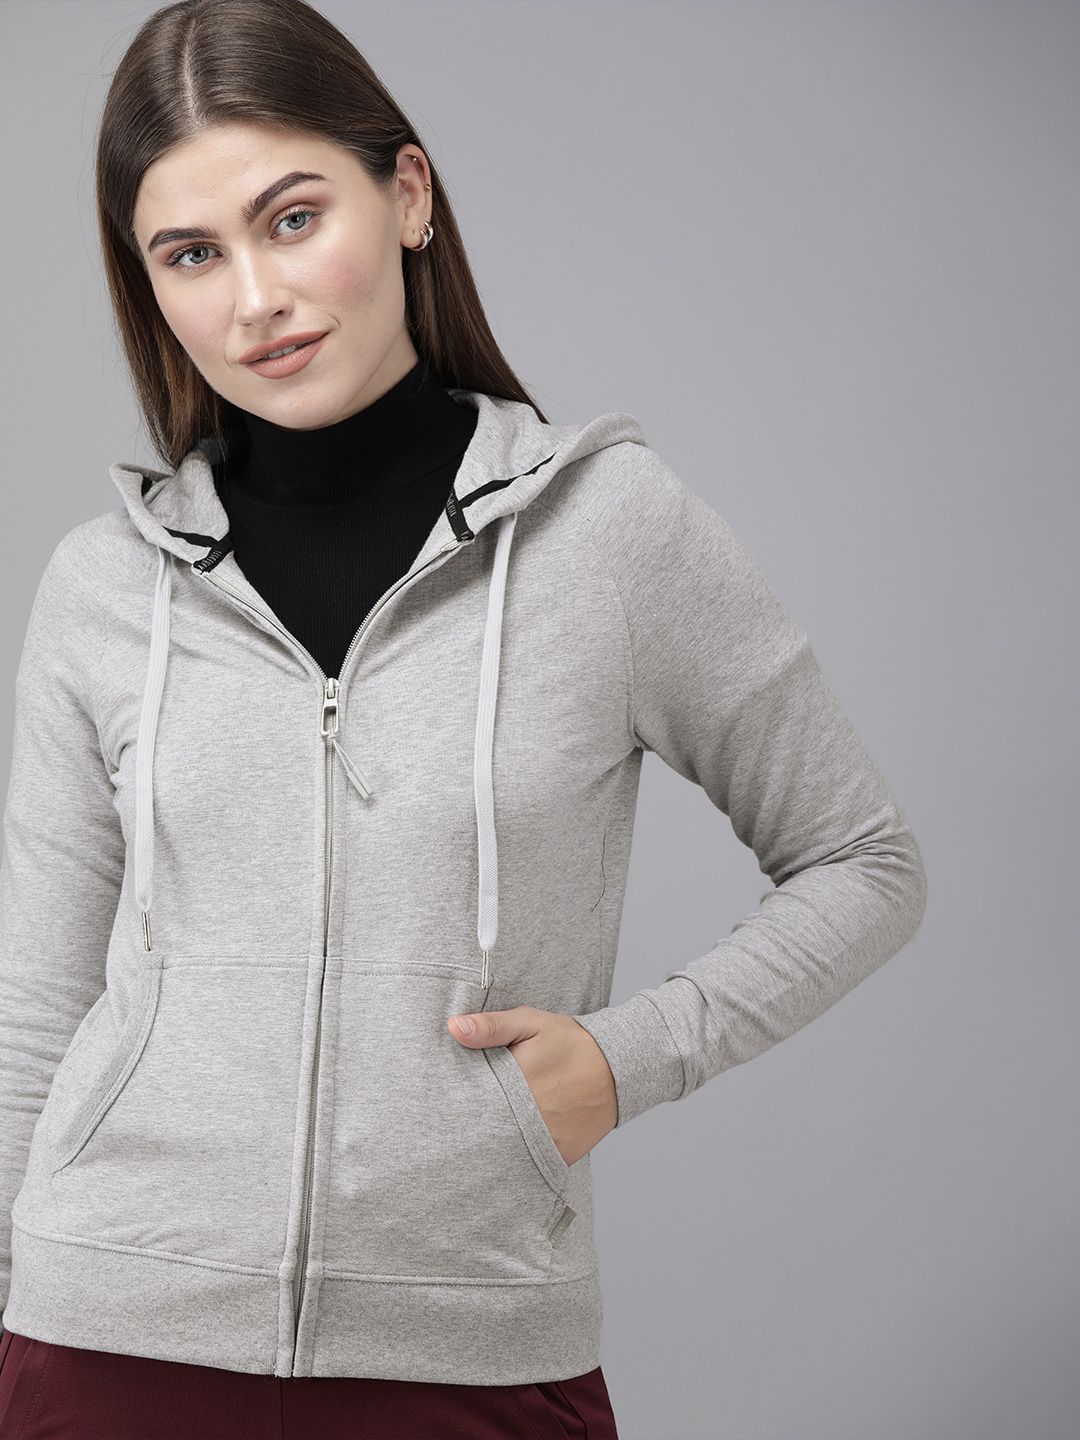 Van Heusen Woman Grey Melange Solid VirotechTM Hooded Sweatshirt Price in India